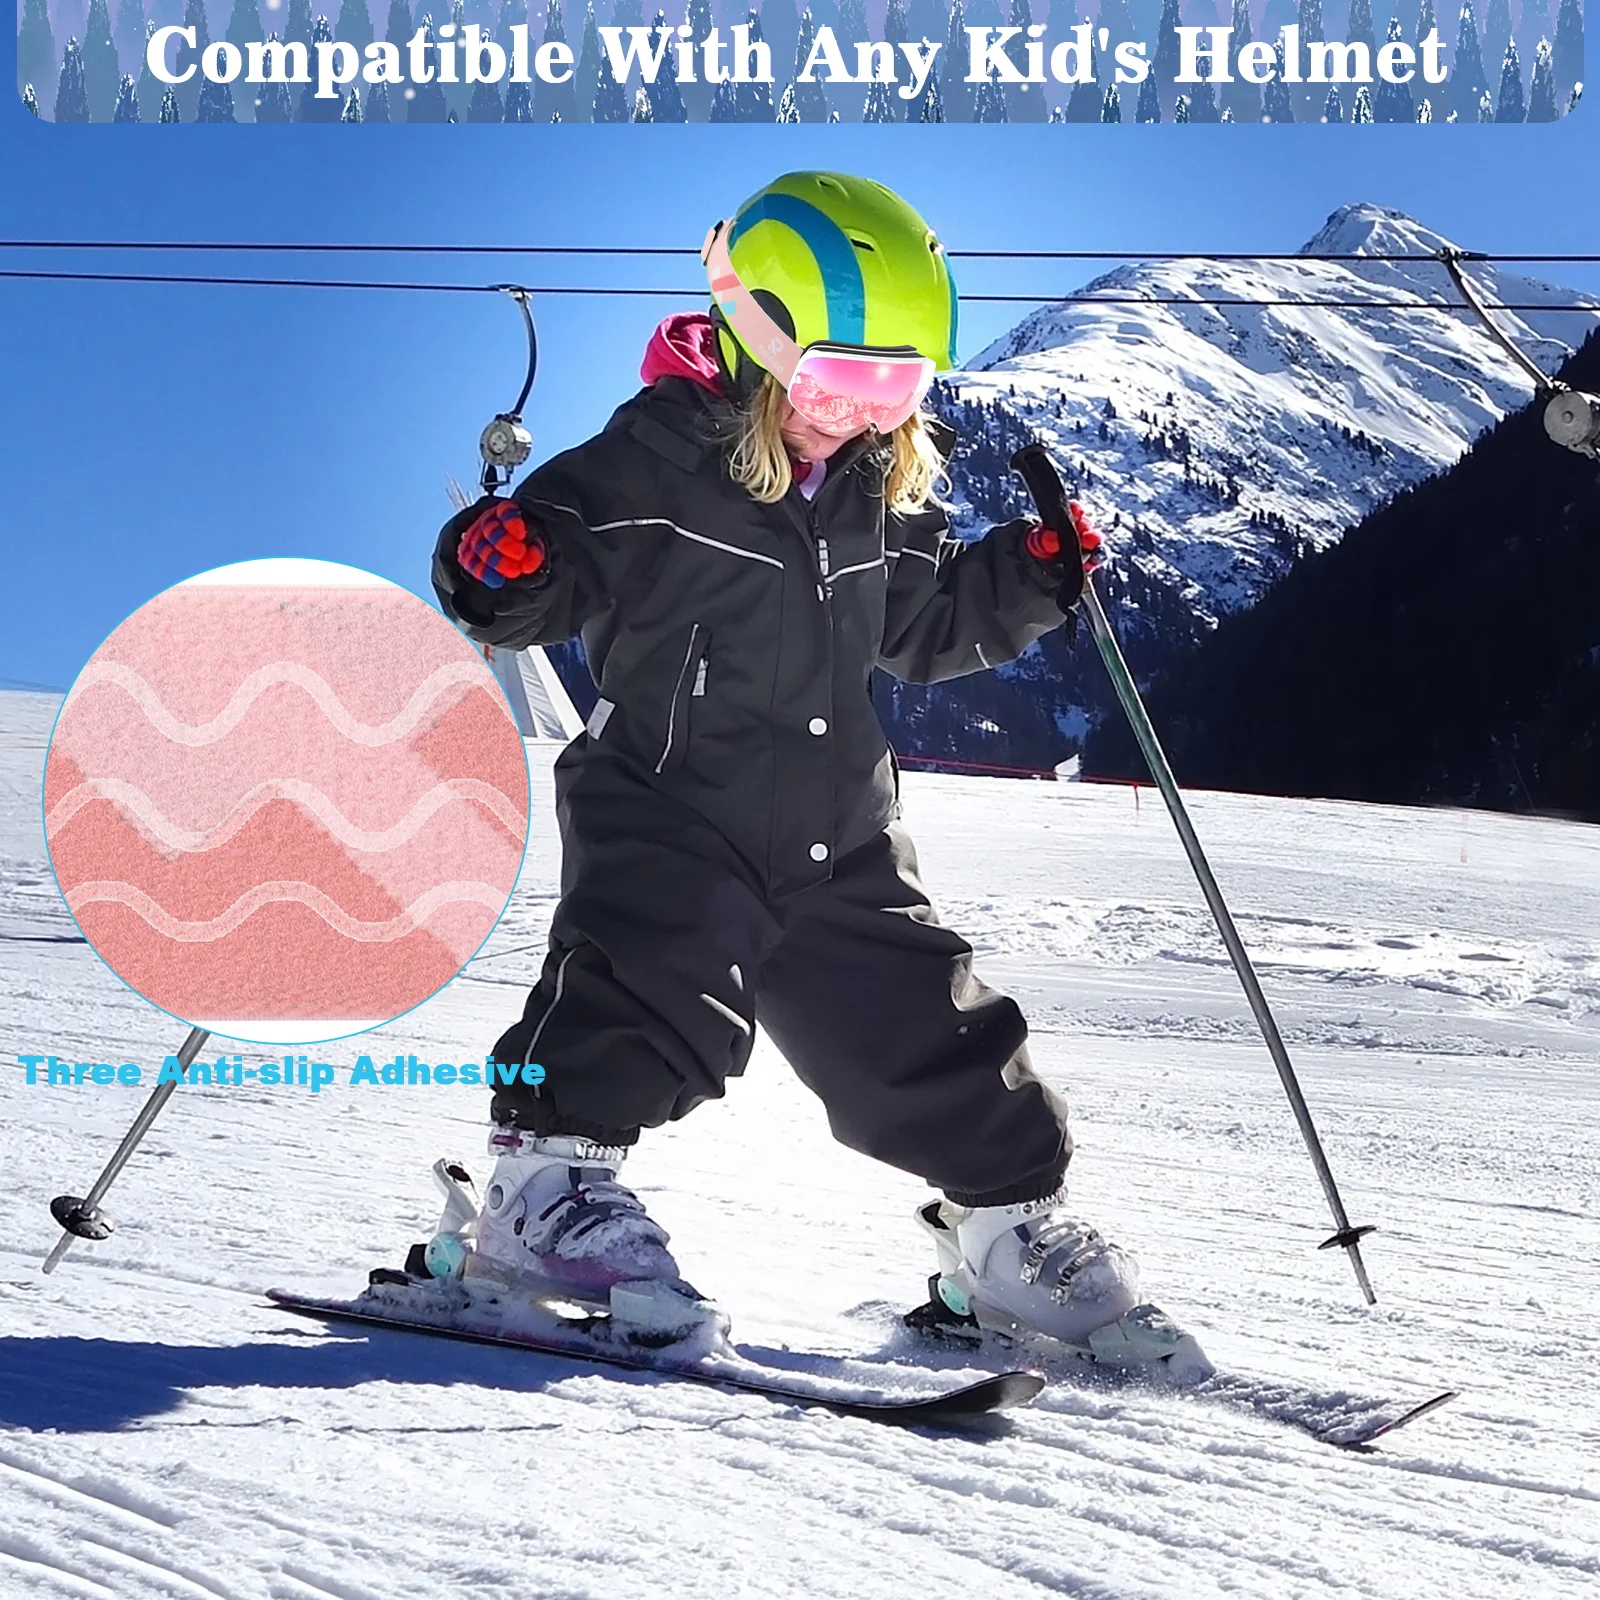 findway Masque de Ski Protection pour Enfant 5 à 16 Ans Lunette Ski Masque  Ski OTG